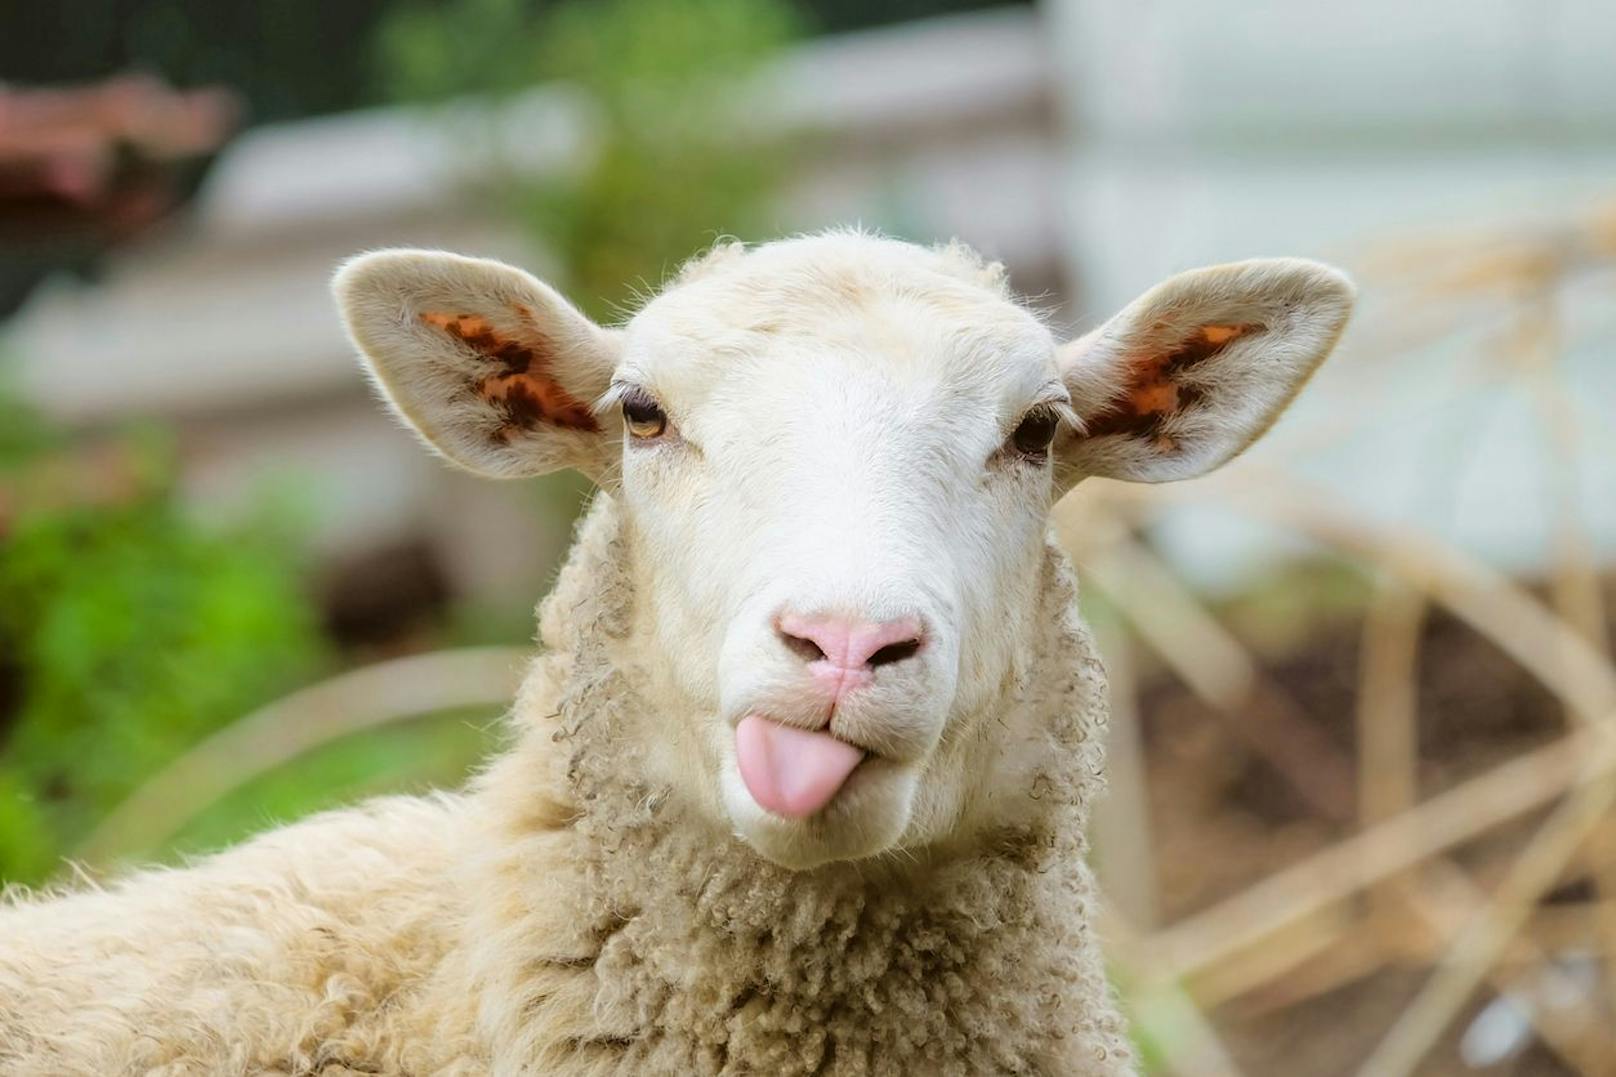 Entgegen der landläufigen Meinung sind Schafe alles andere als dumm. Sie erkennen sogar Gesichter auf Fotos, wissen welche Heilkräfte bestimmte Kräuter haben und trauern um Artgenossen.